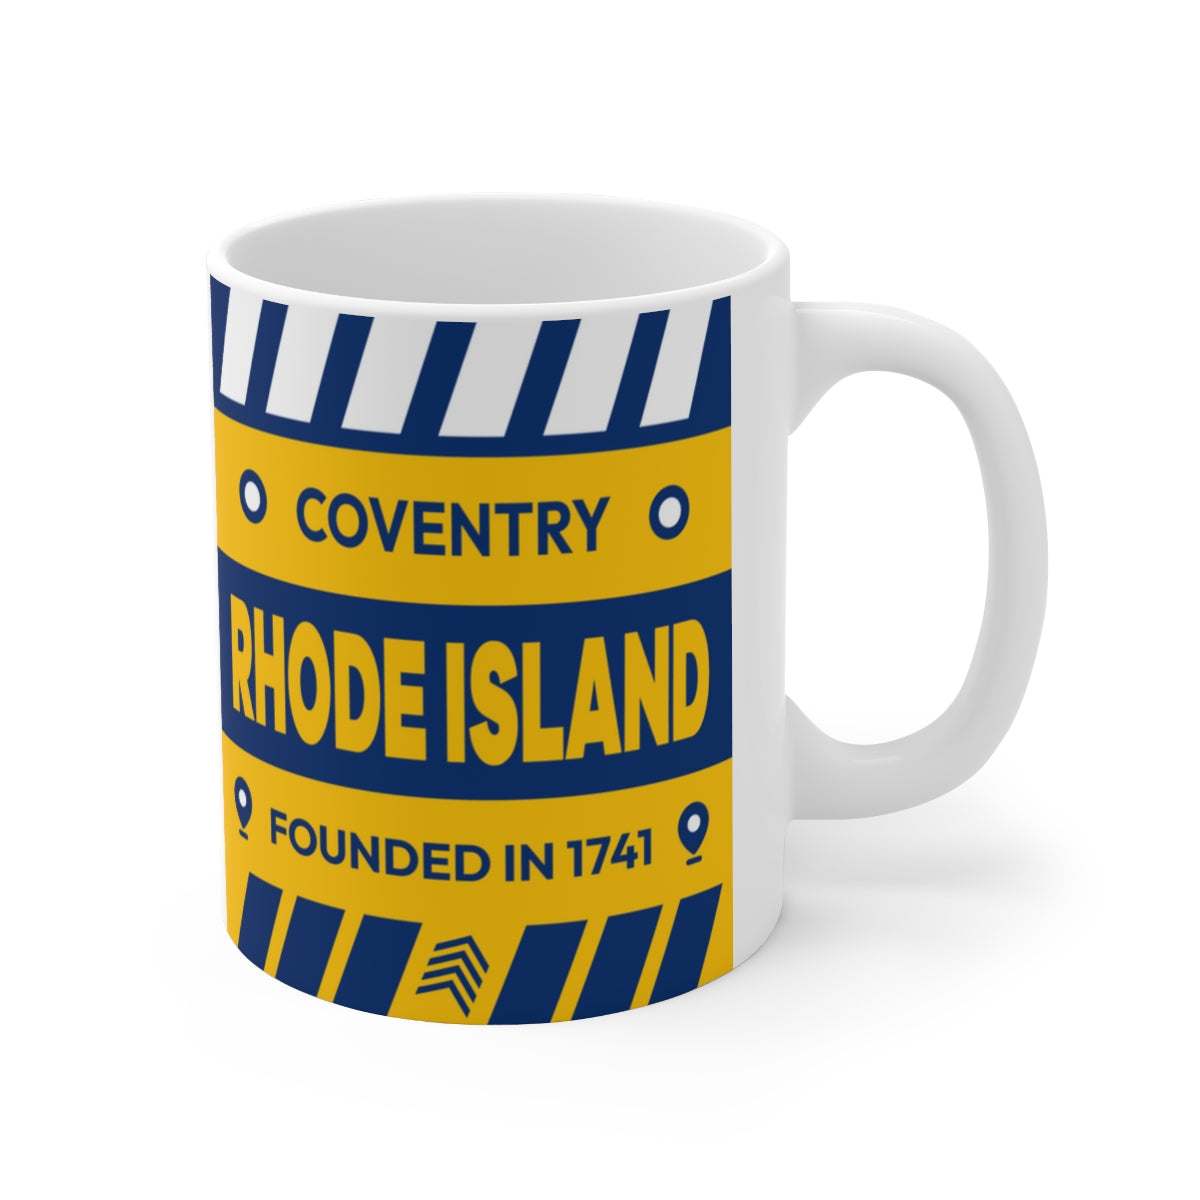 11oz Ceramic mug for Coventry, Rhode Island Side view